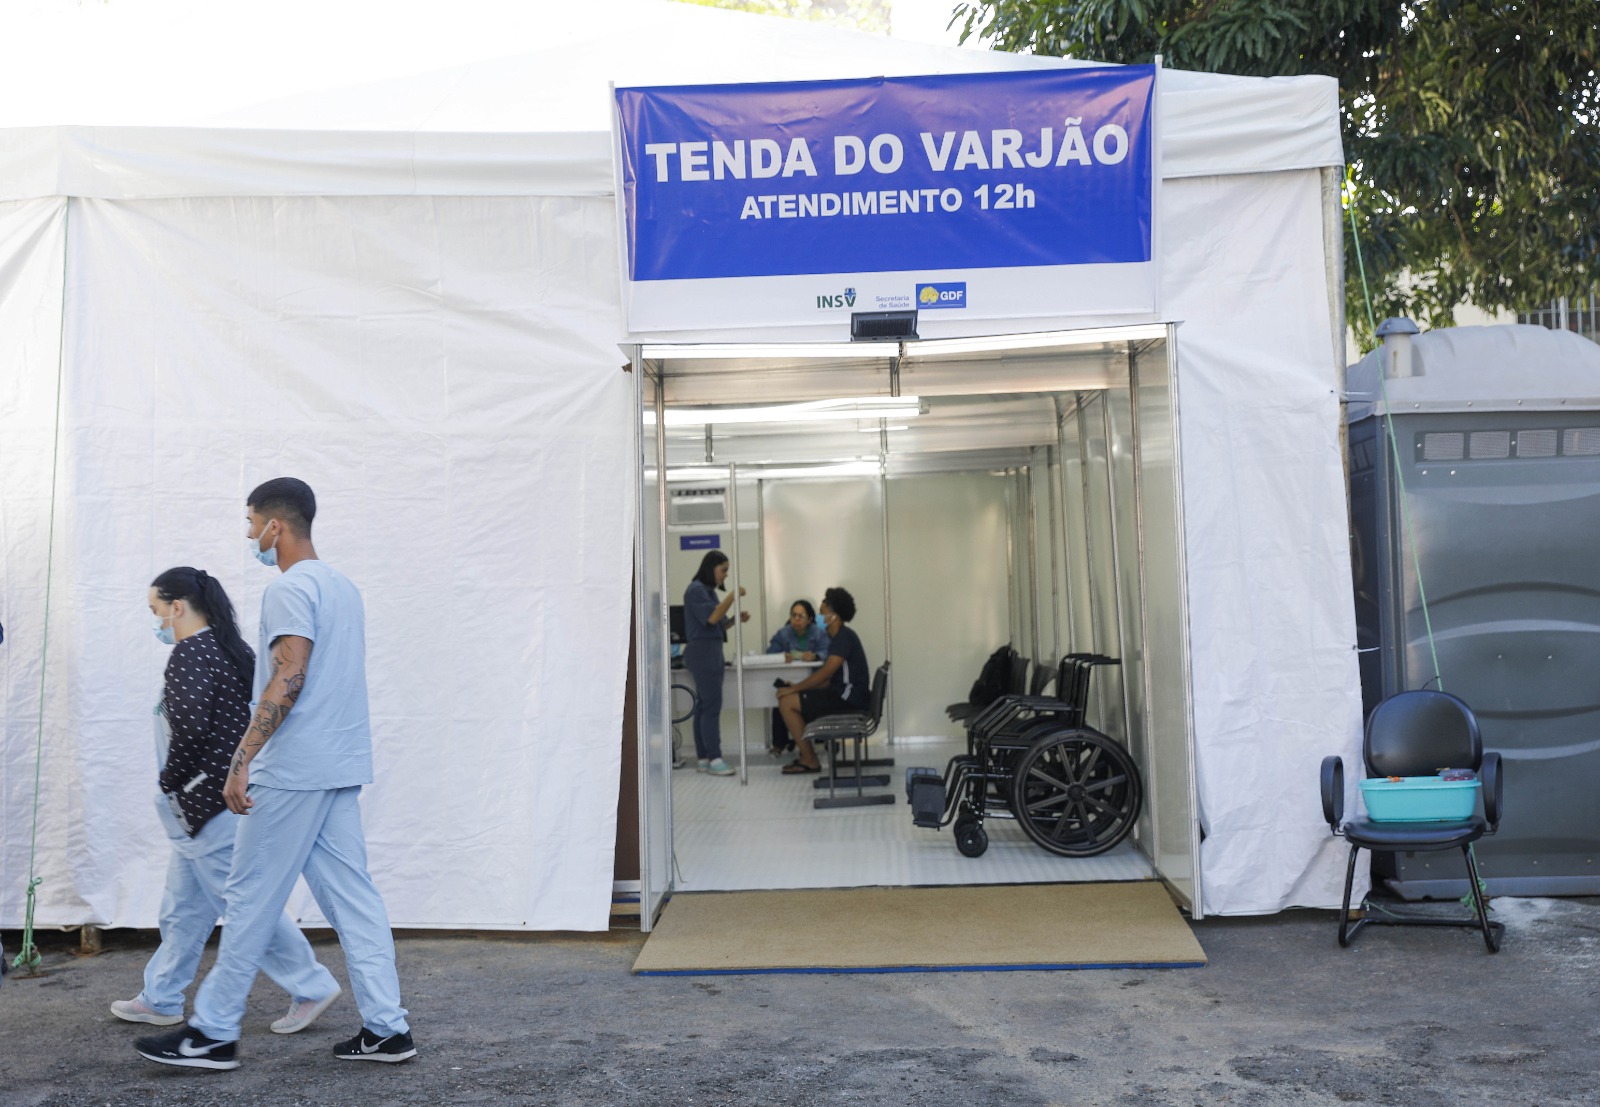 Tenda de acolhimento para pacientes com dengue é inaugurada no Varjão